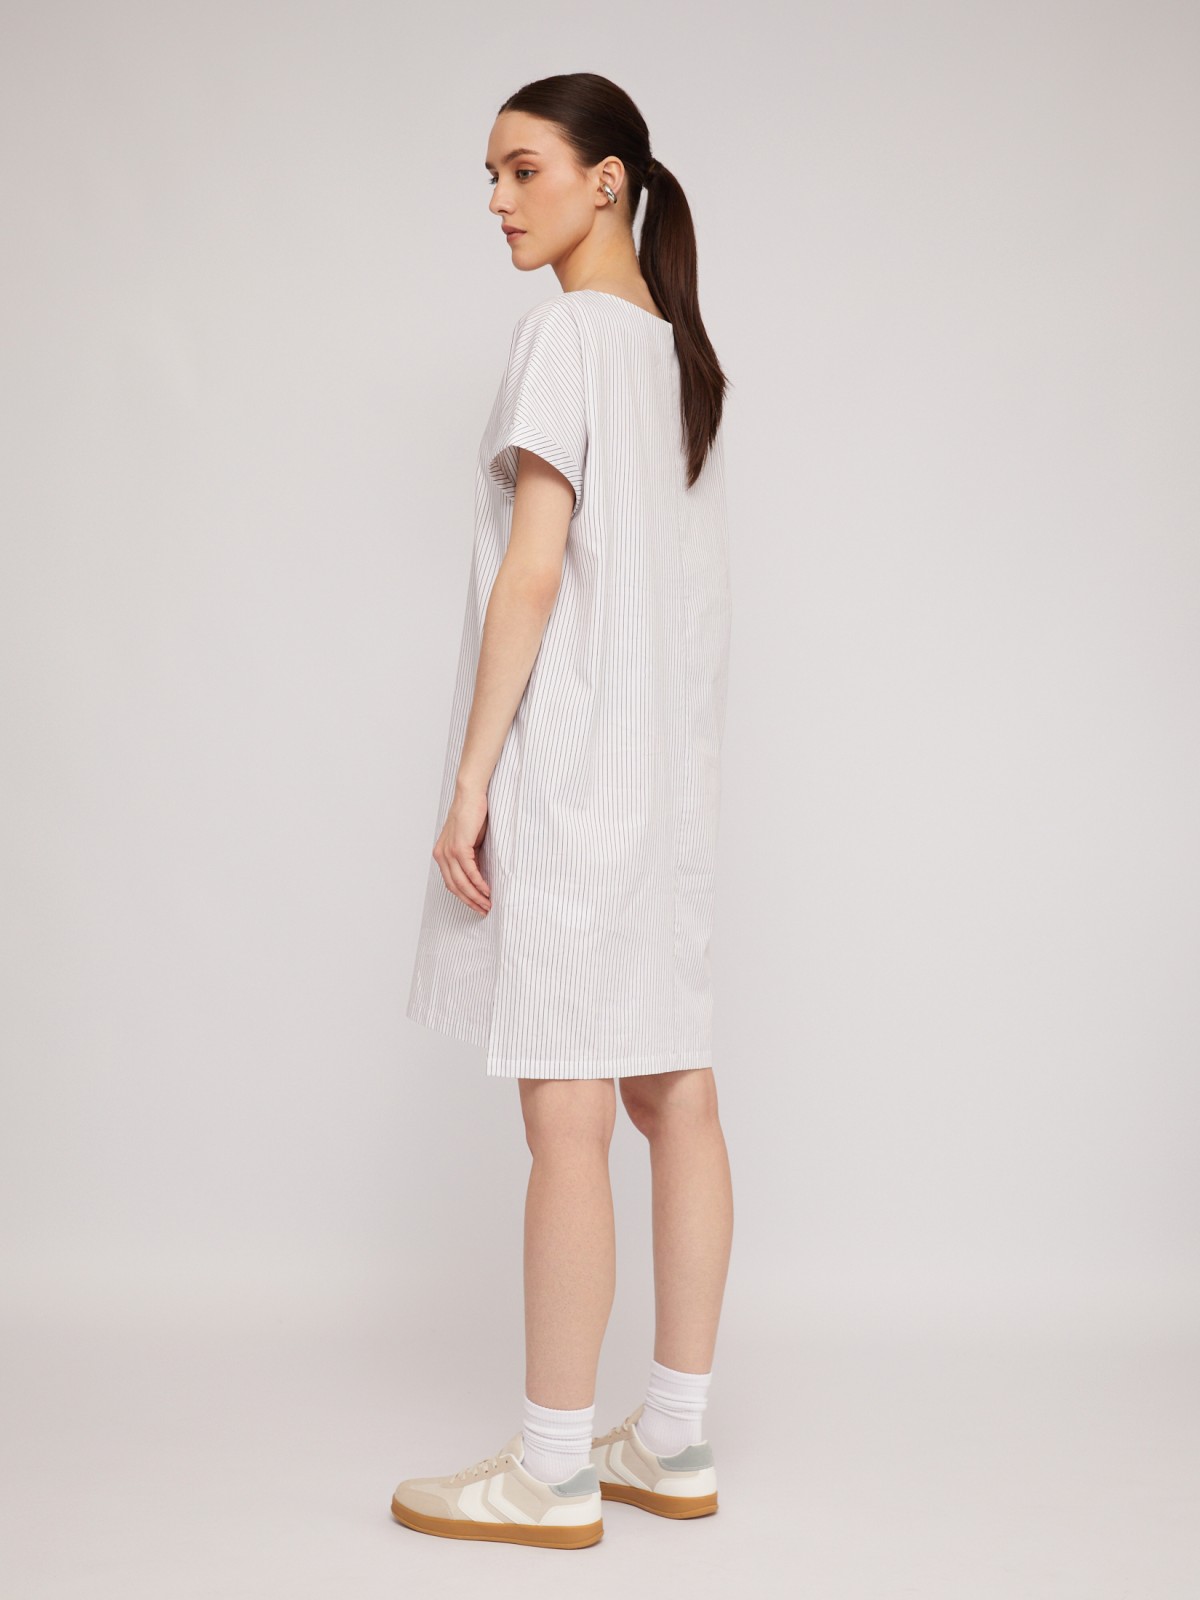 Платье-футболка из хлопка с принтом zolla 024248259593, цвет белый, размер S - фото 6